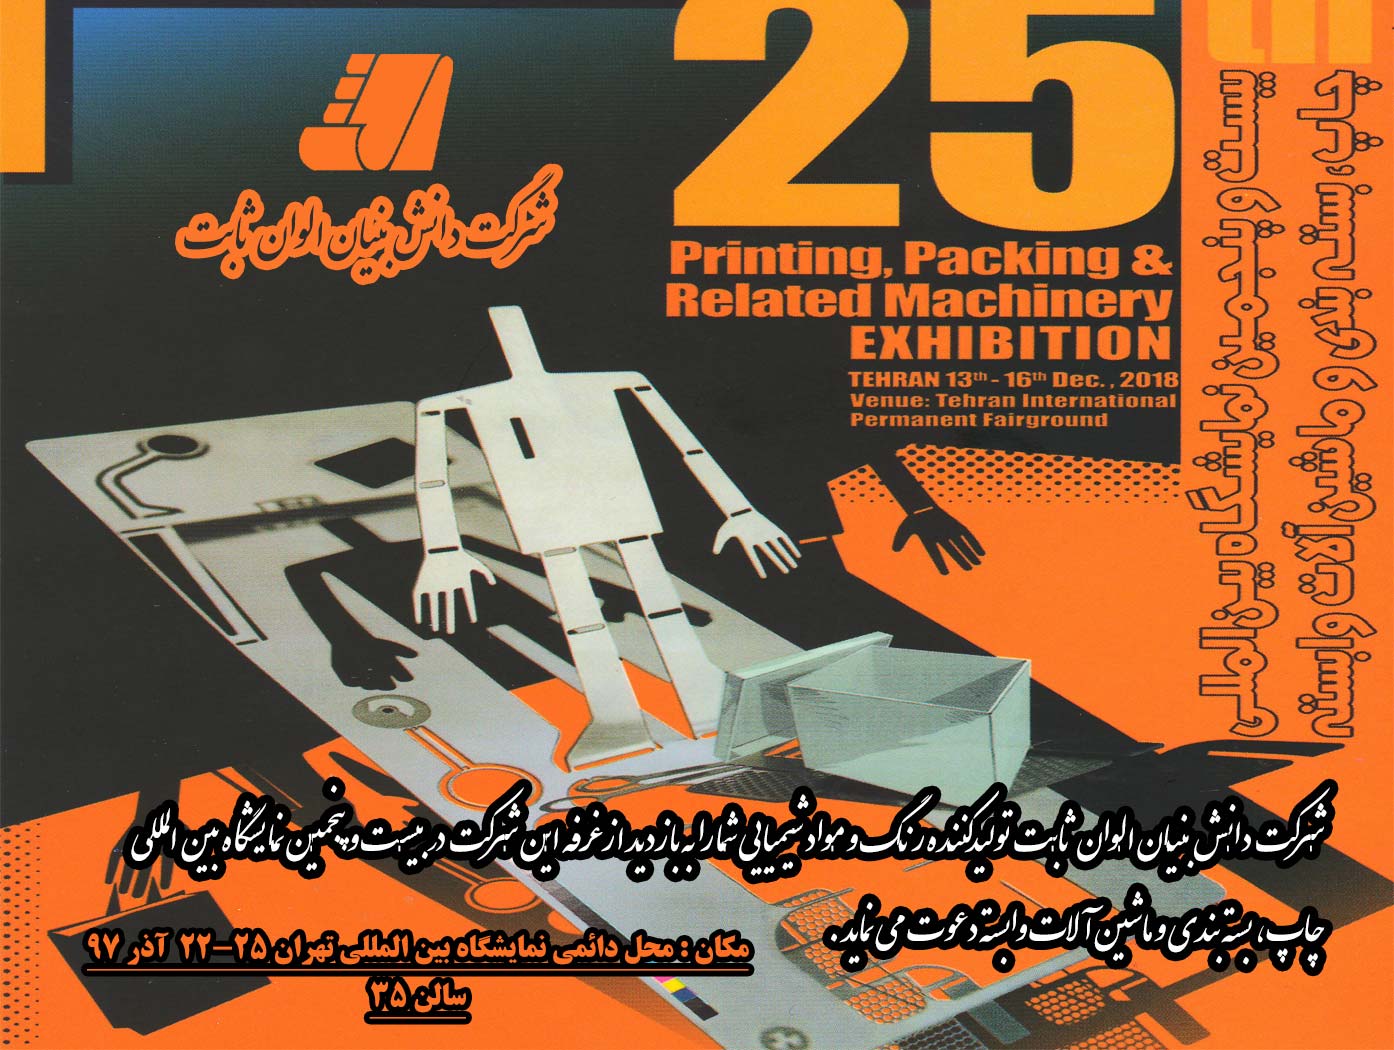 حضور در بیست و پنجمین نمایشگاه بین المللی چاپ، بسته بندی و ماشین آلات وابسته تهران 97 